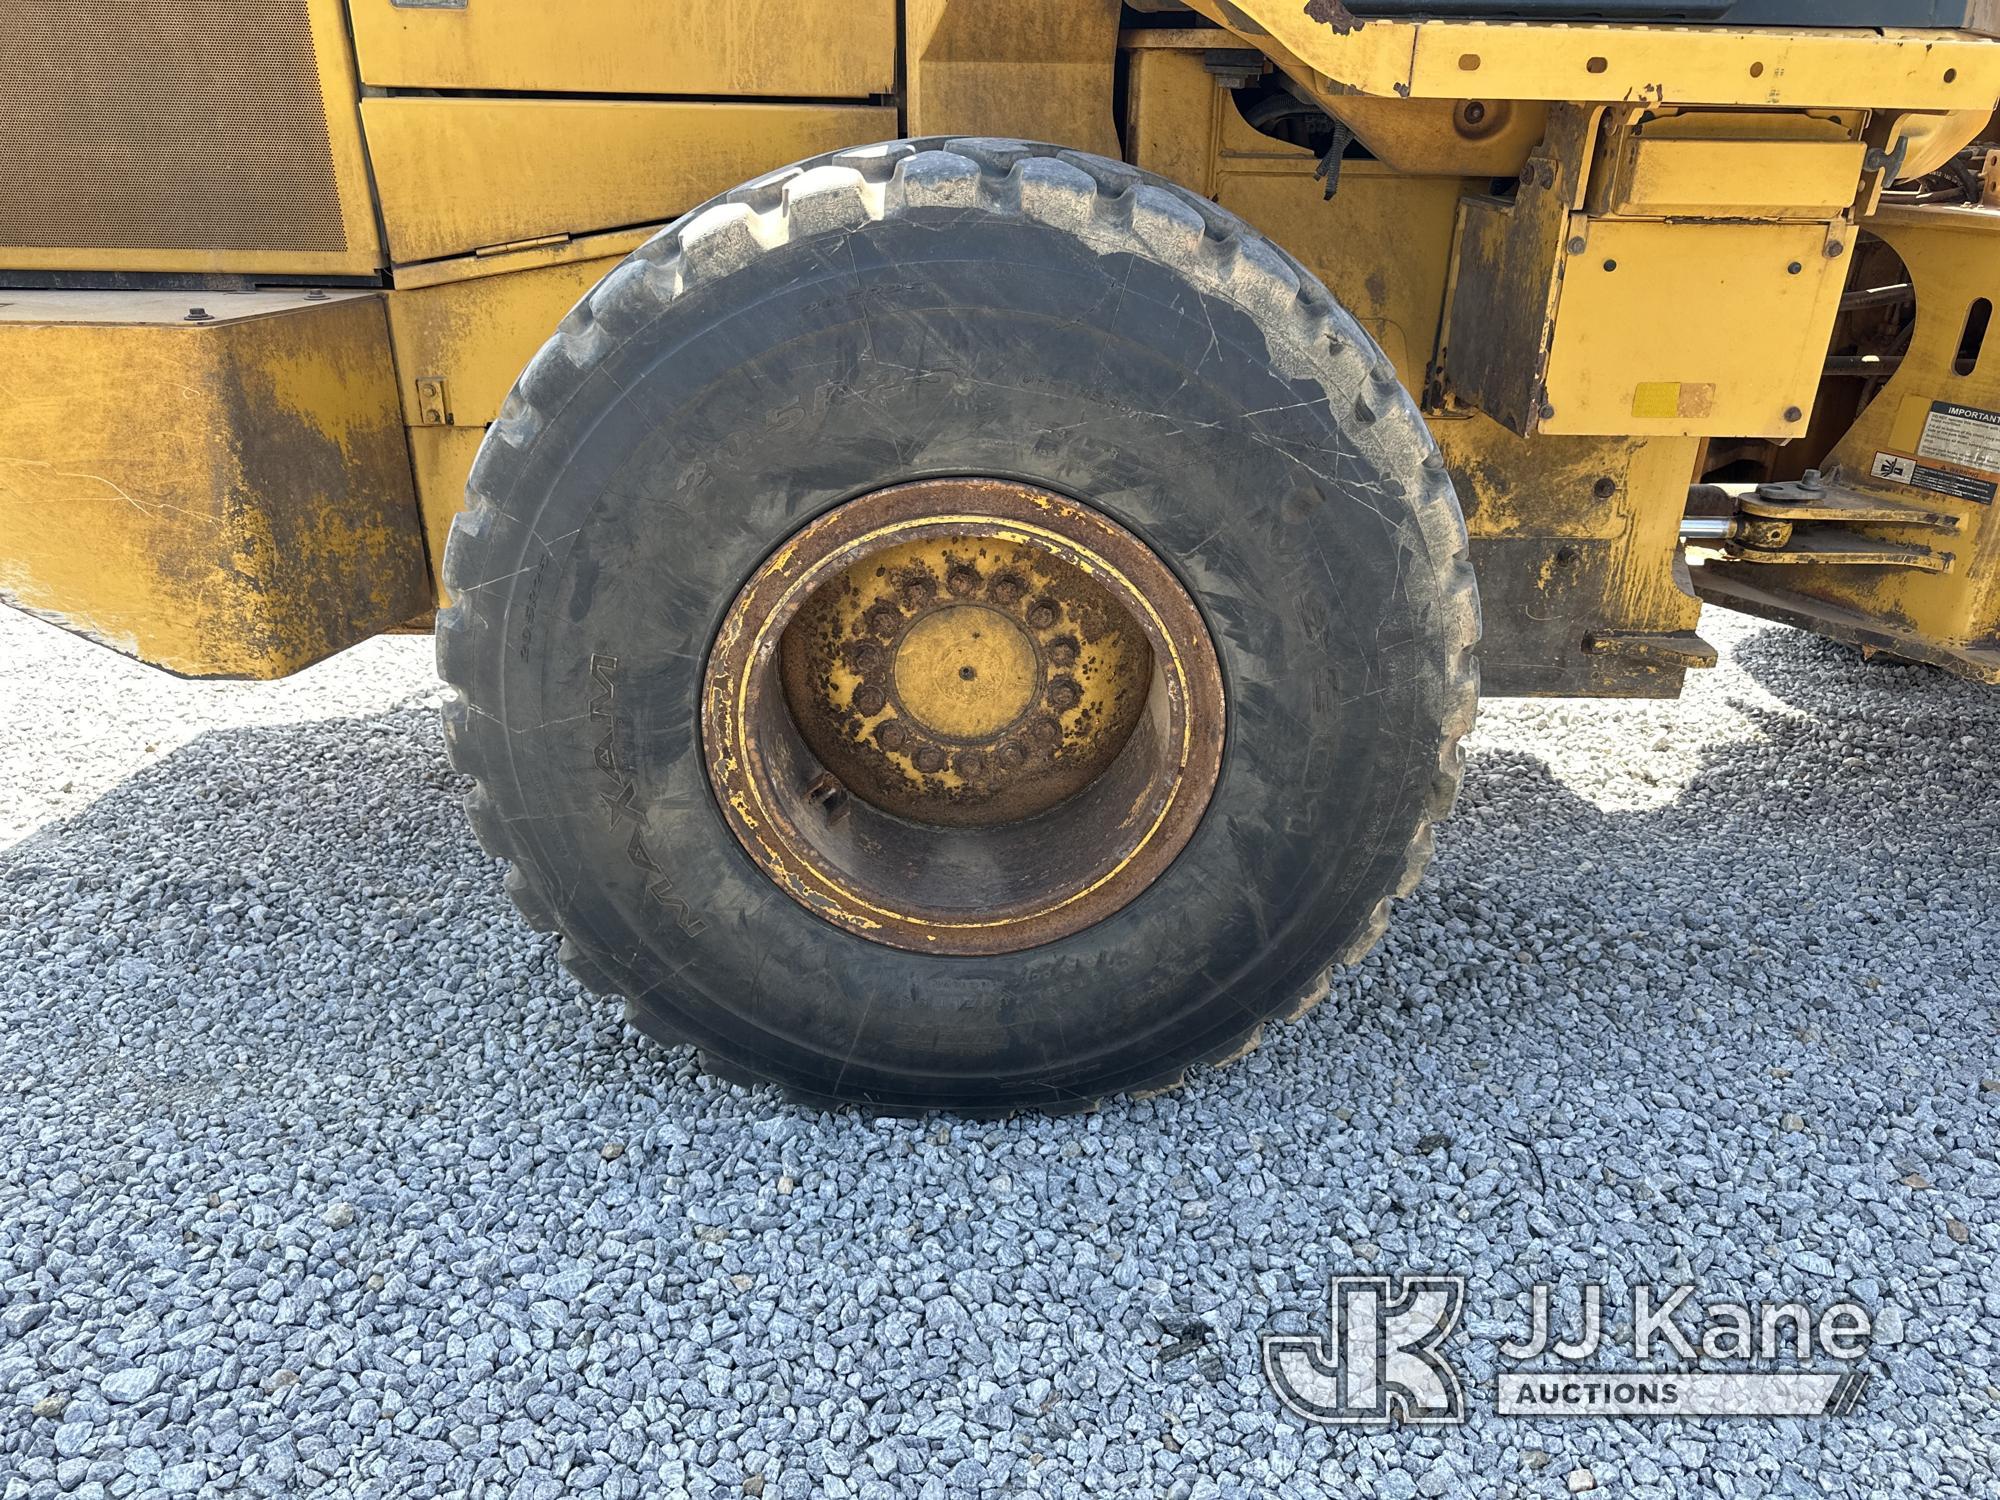 (Villa Rica, GA) 2019 John Deere 524L Articulating Wheel Loader Runs, Moves & Operates